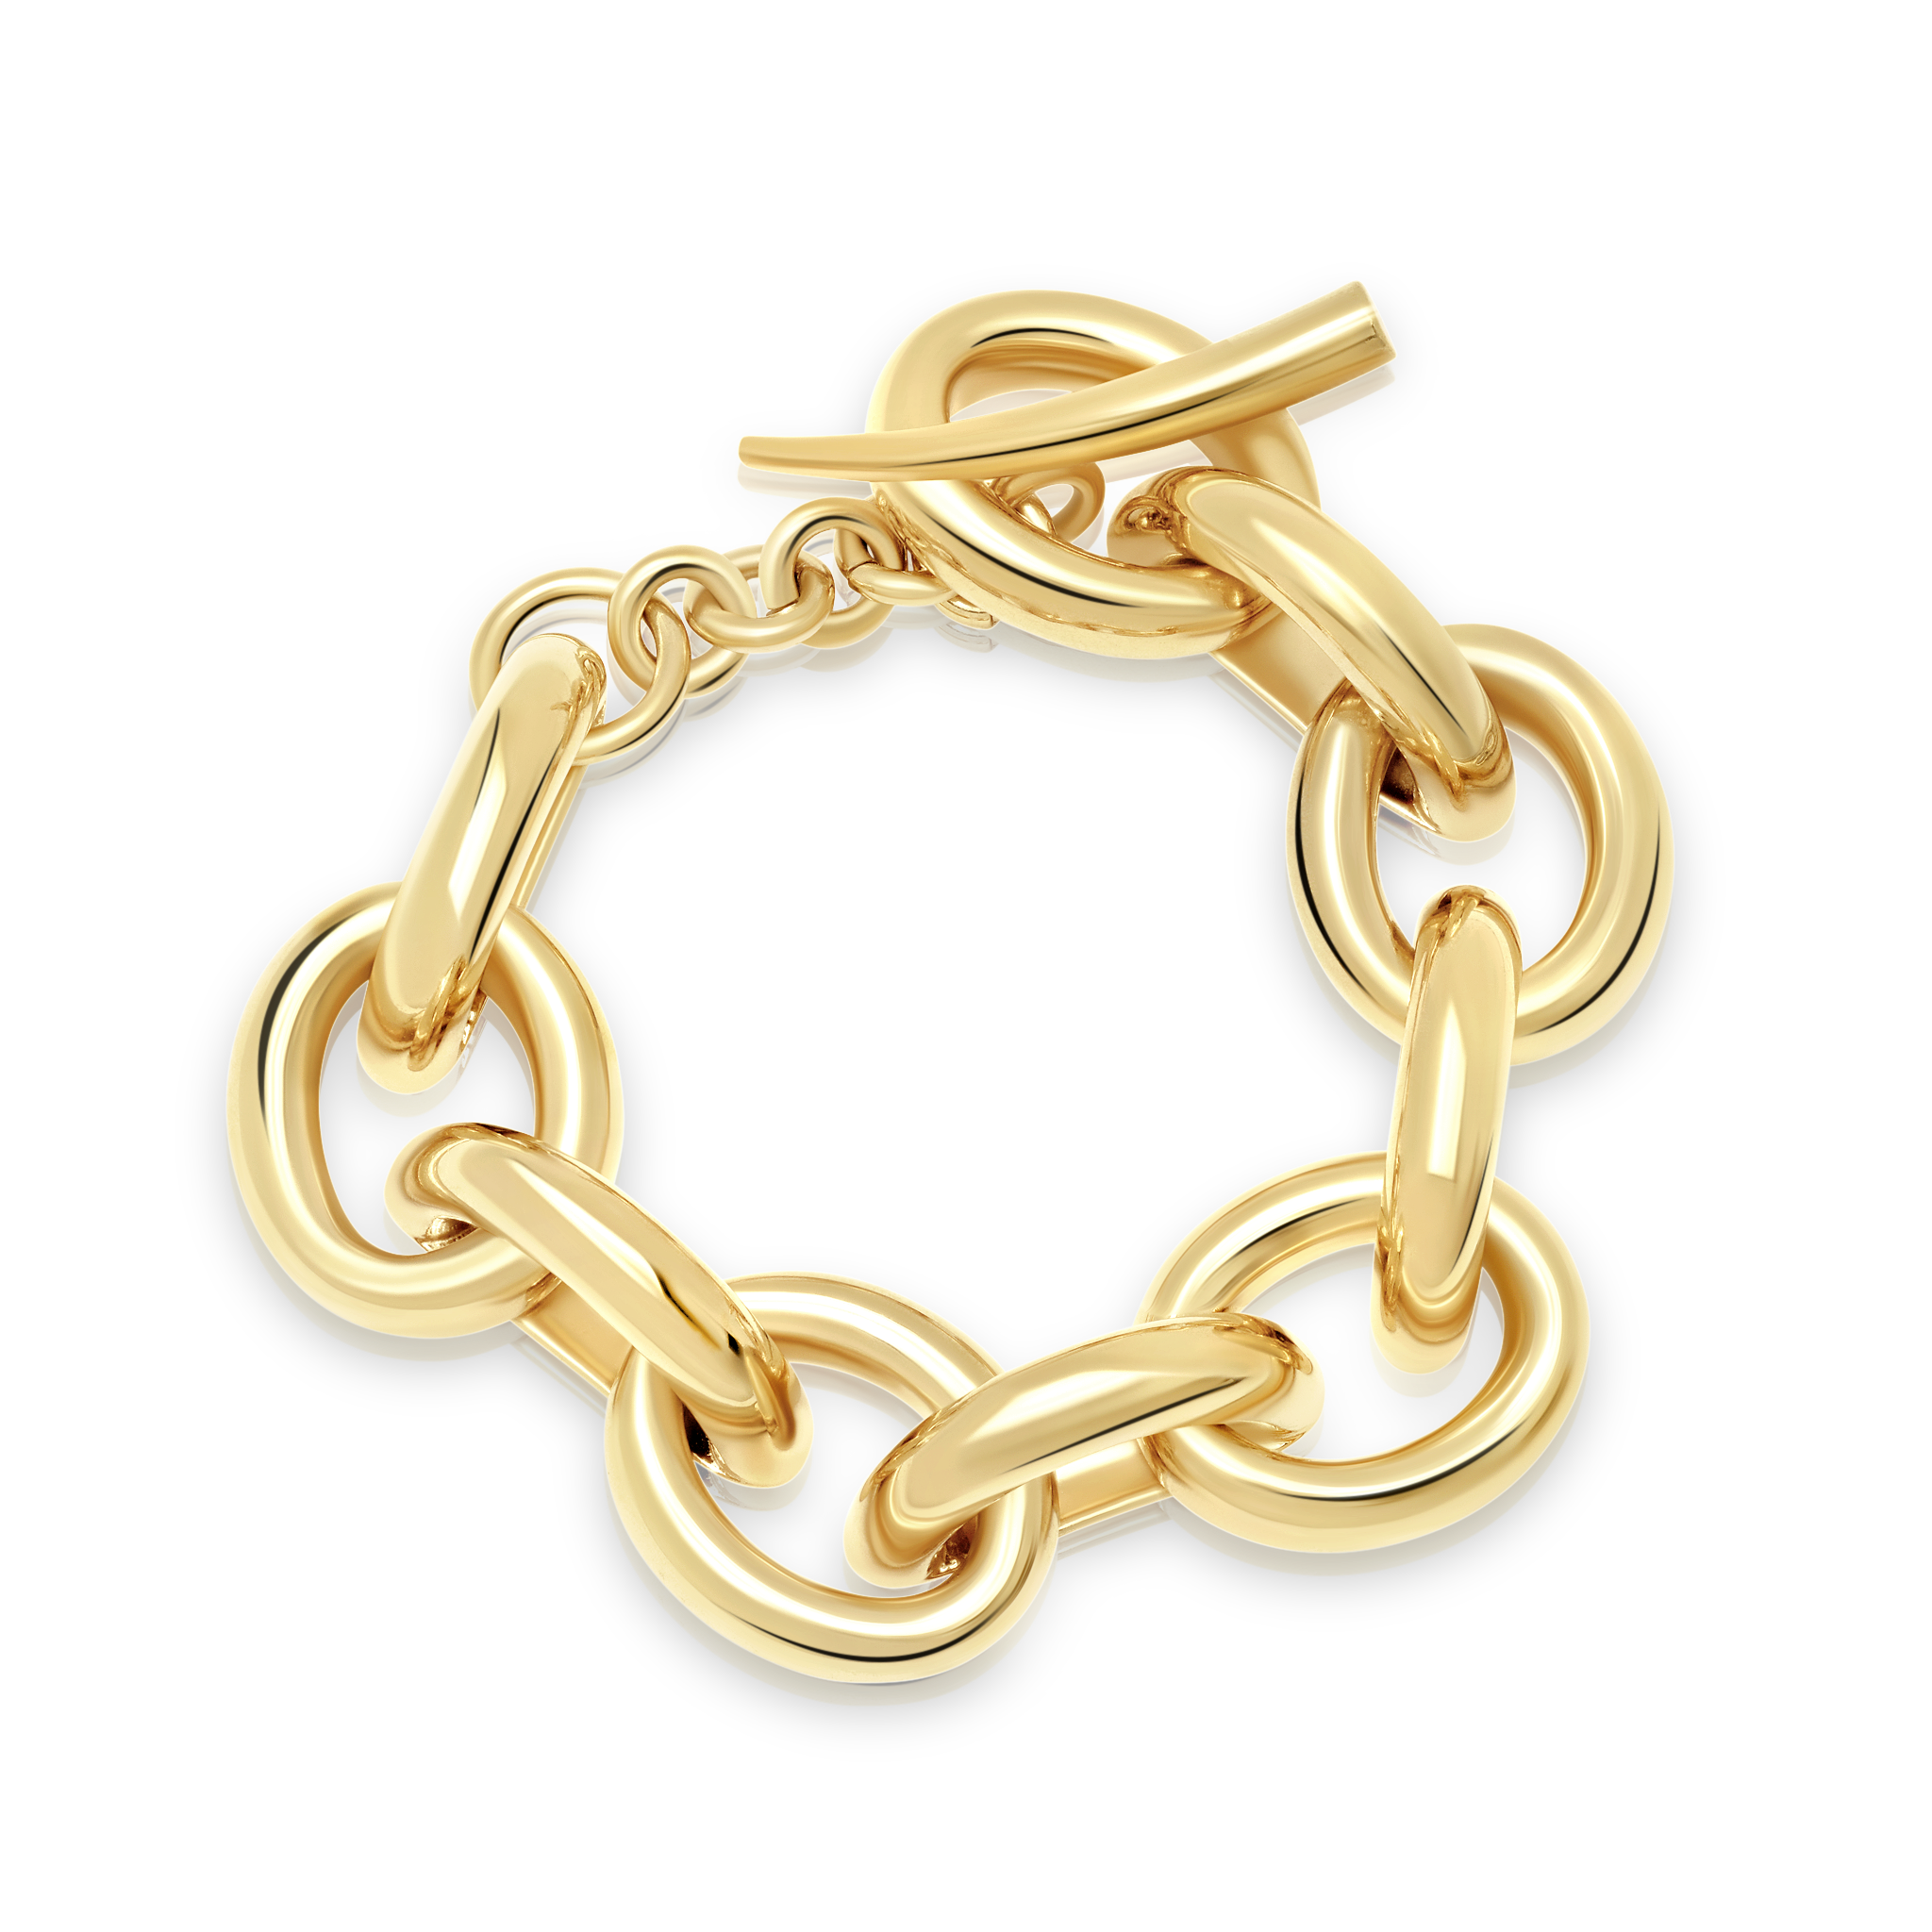 Small Full Link Bracelet - Gabriela Artigas